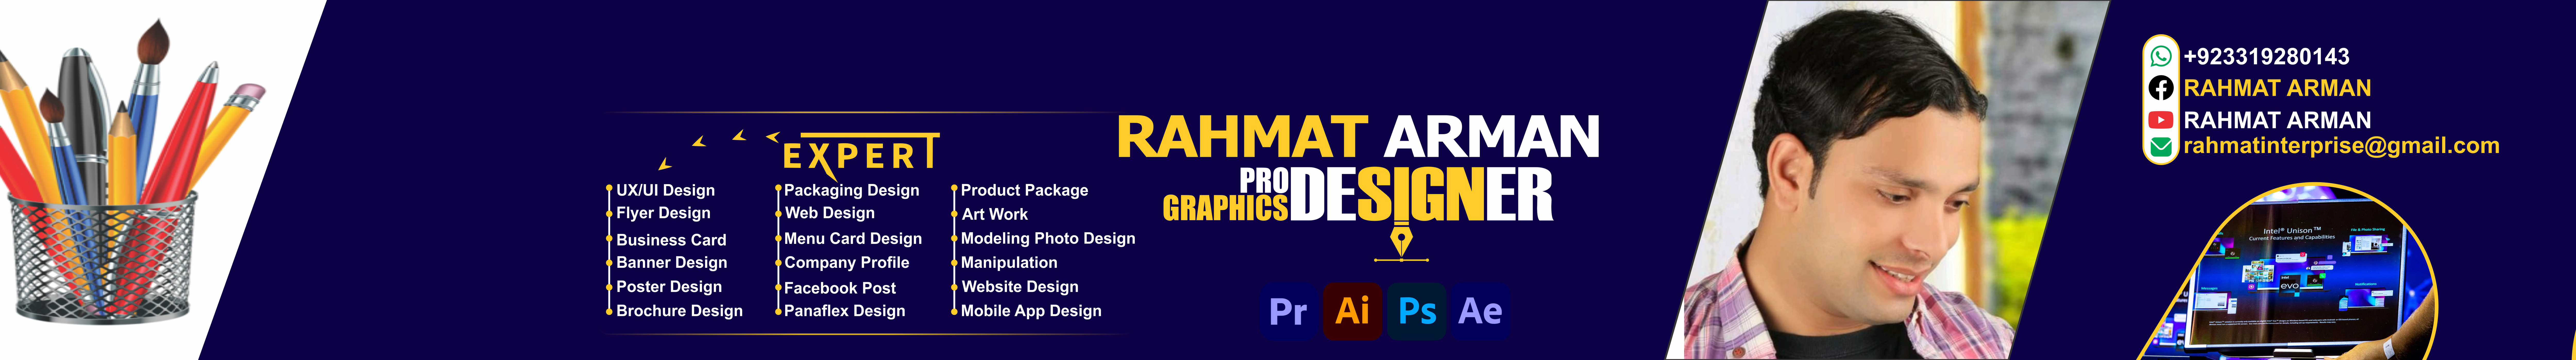 Bannière de profil de Rahmat Arman